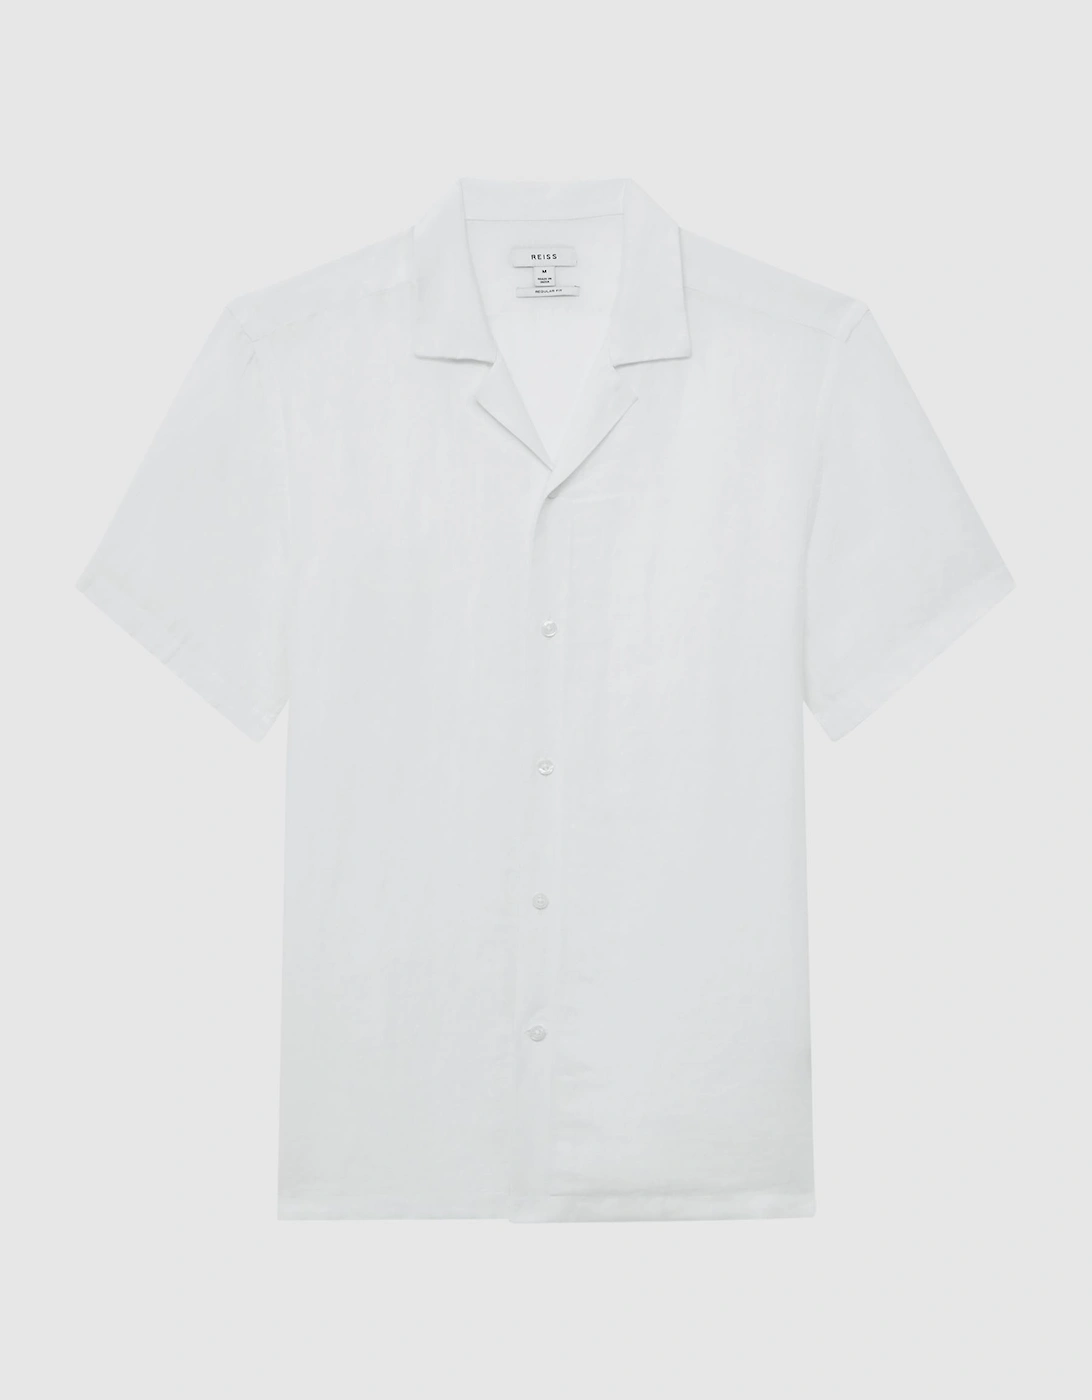 Linen Cuban Collar Shirt, 2 of 1